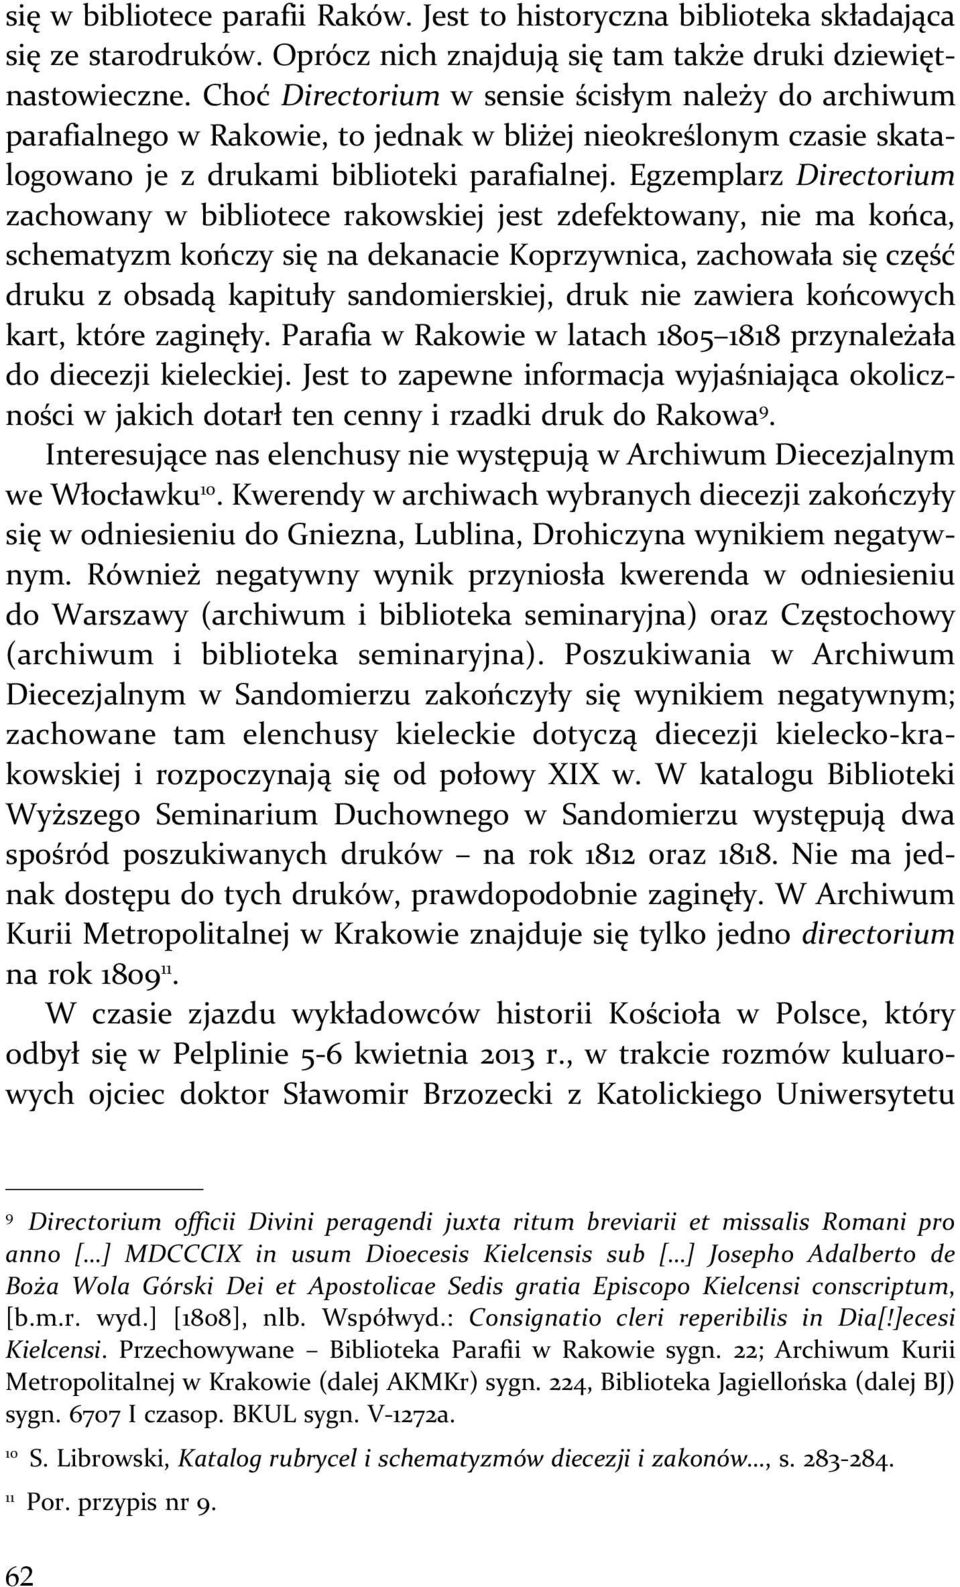 Egzemplarz Directorium zachowany w bibliotece rakowskiej jest zdefektowany, nie ma końca, schematyzm kończy się na dekanacie Koprzywnica, zachowała się część druku z obsadą kapituły sandomierskiej,